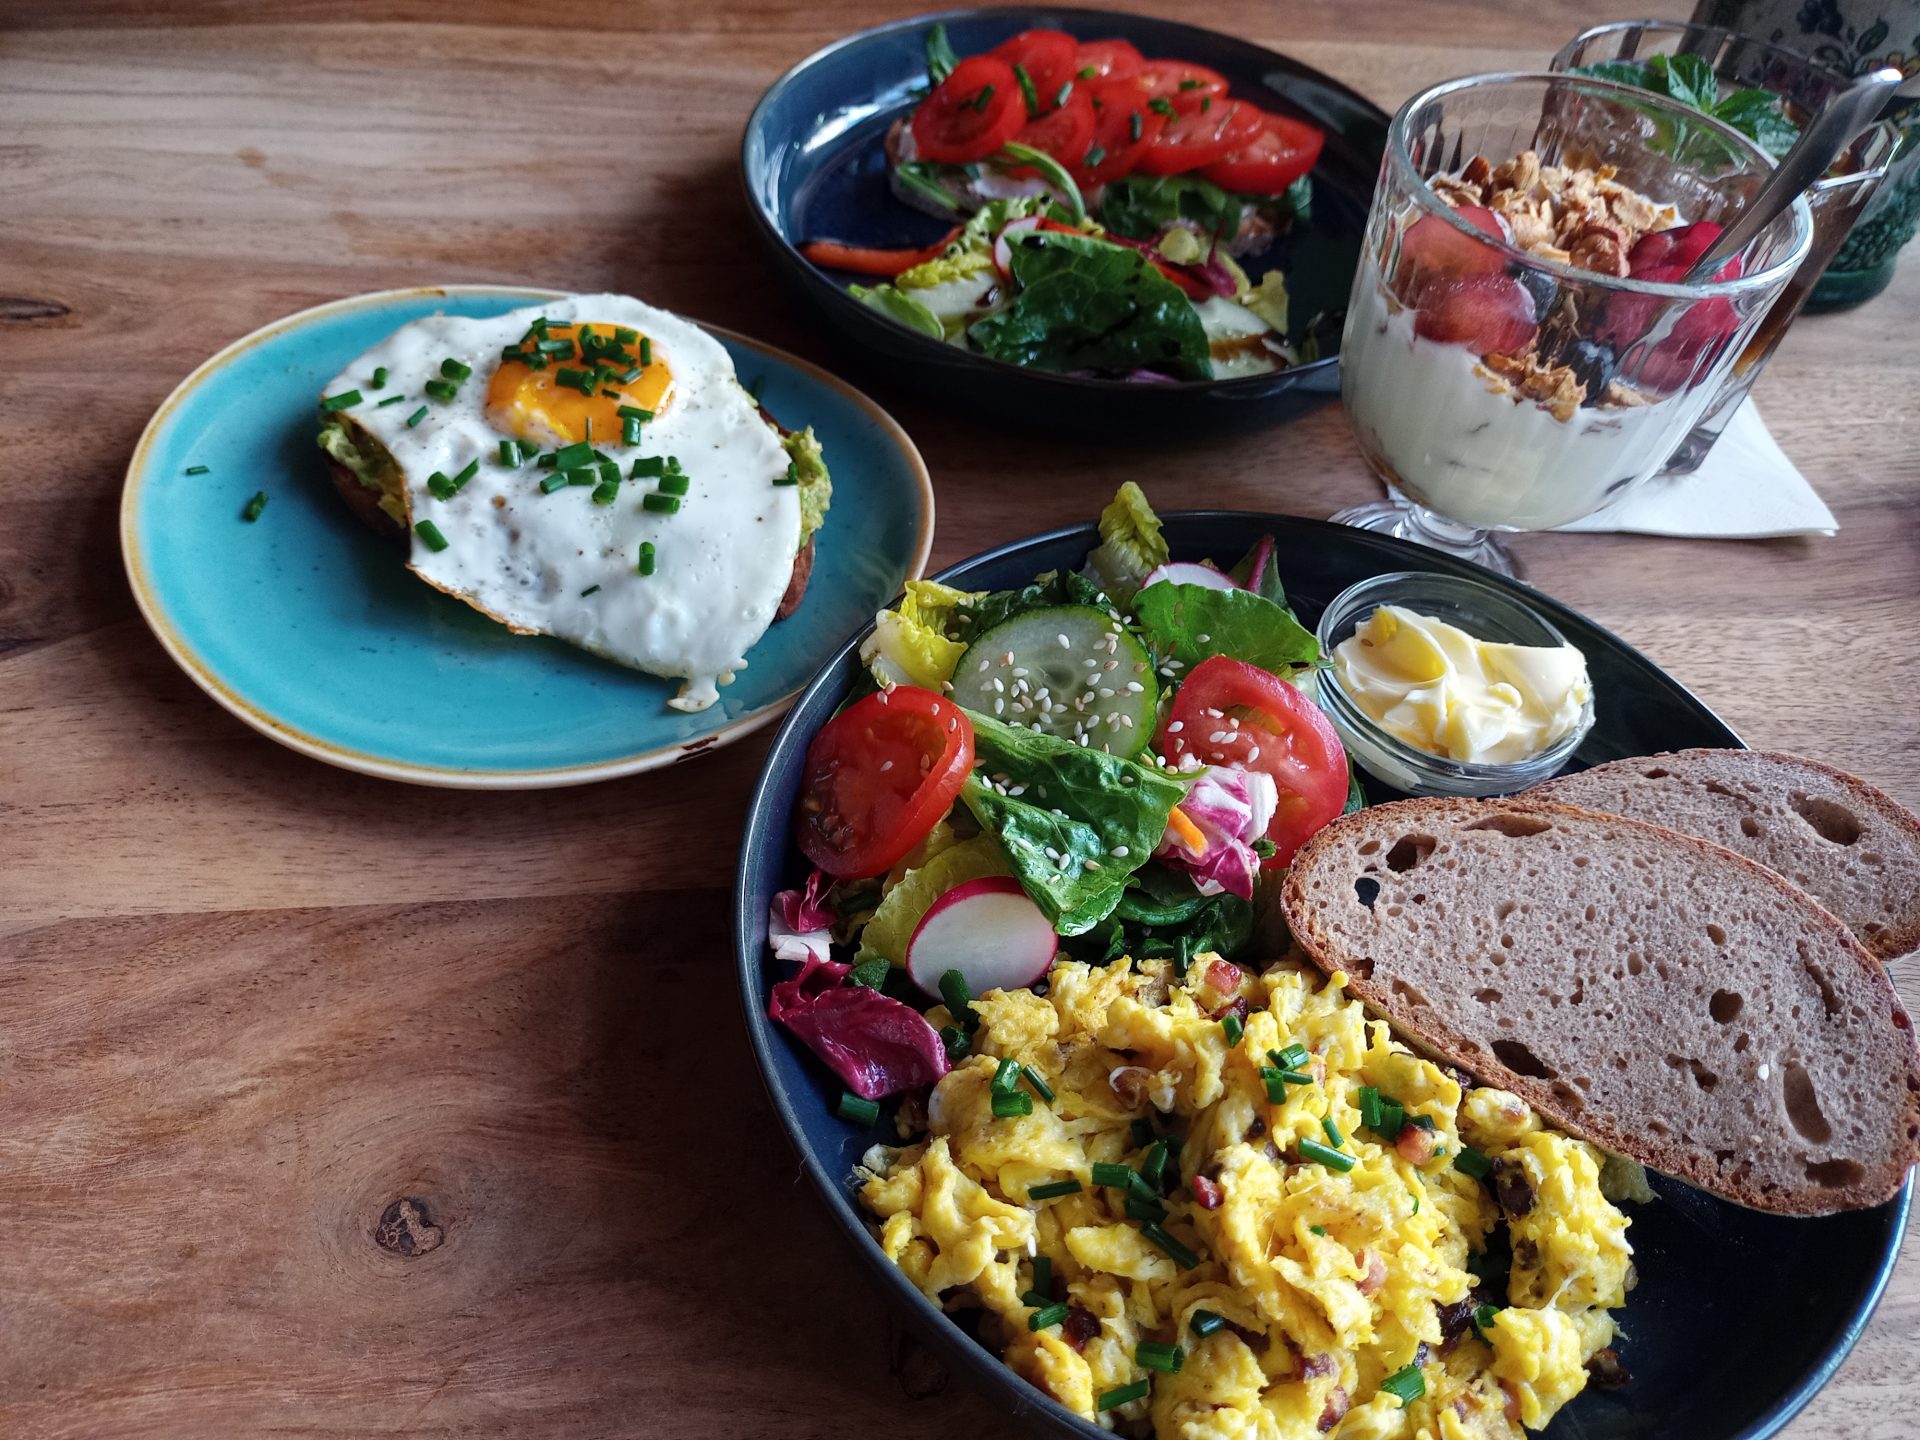 Bild zeigt mehrere Teller mit Eierspeisen und Gemüse sowie ein Glas mit Joghurt